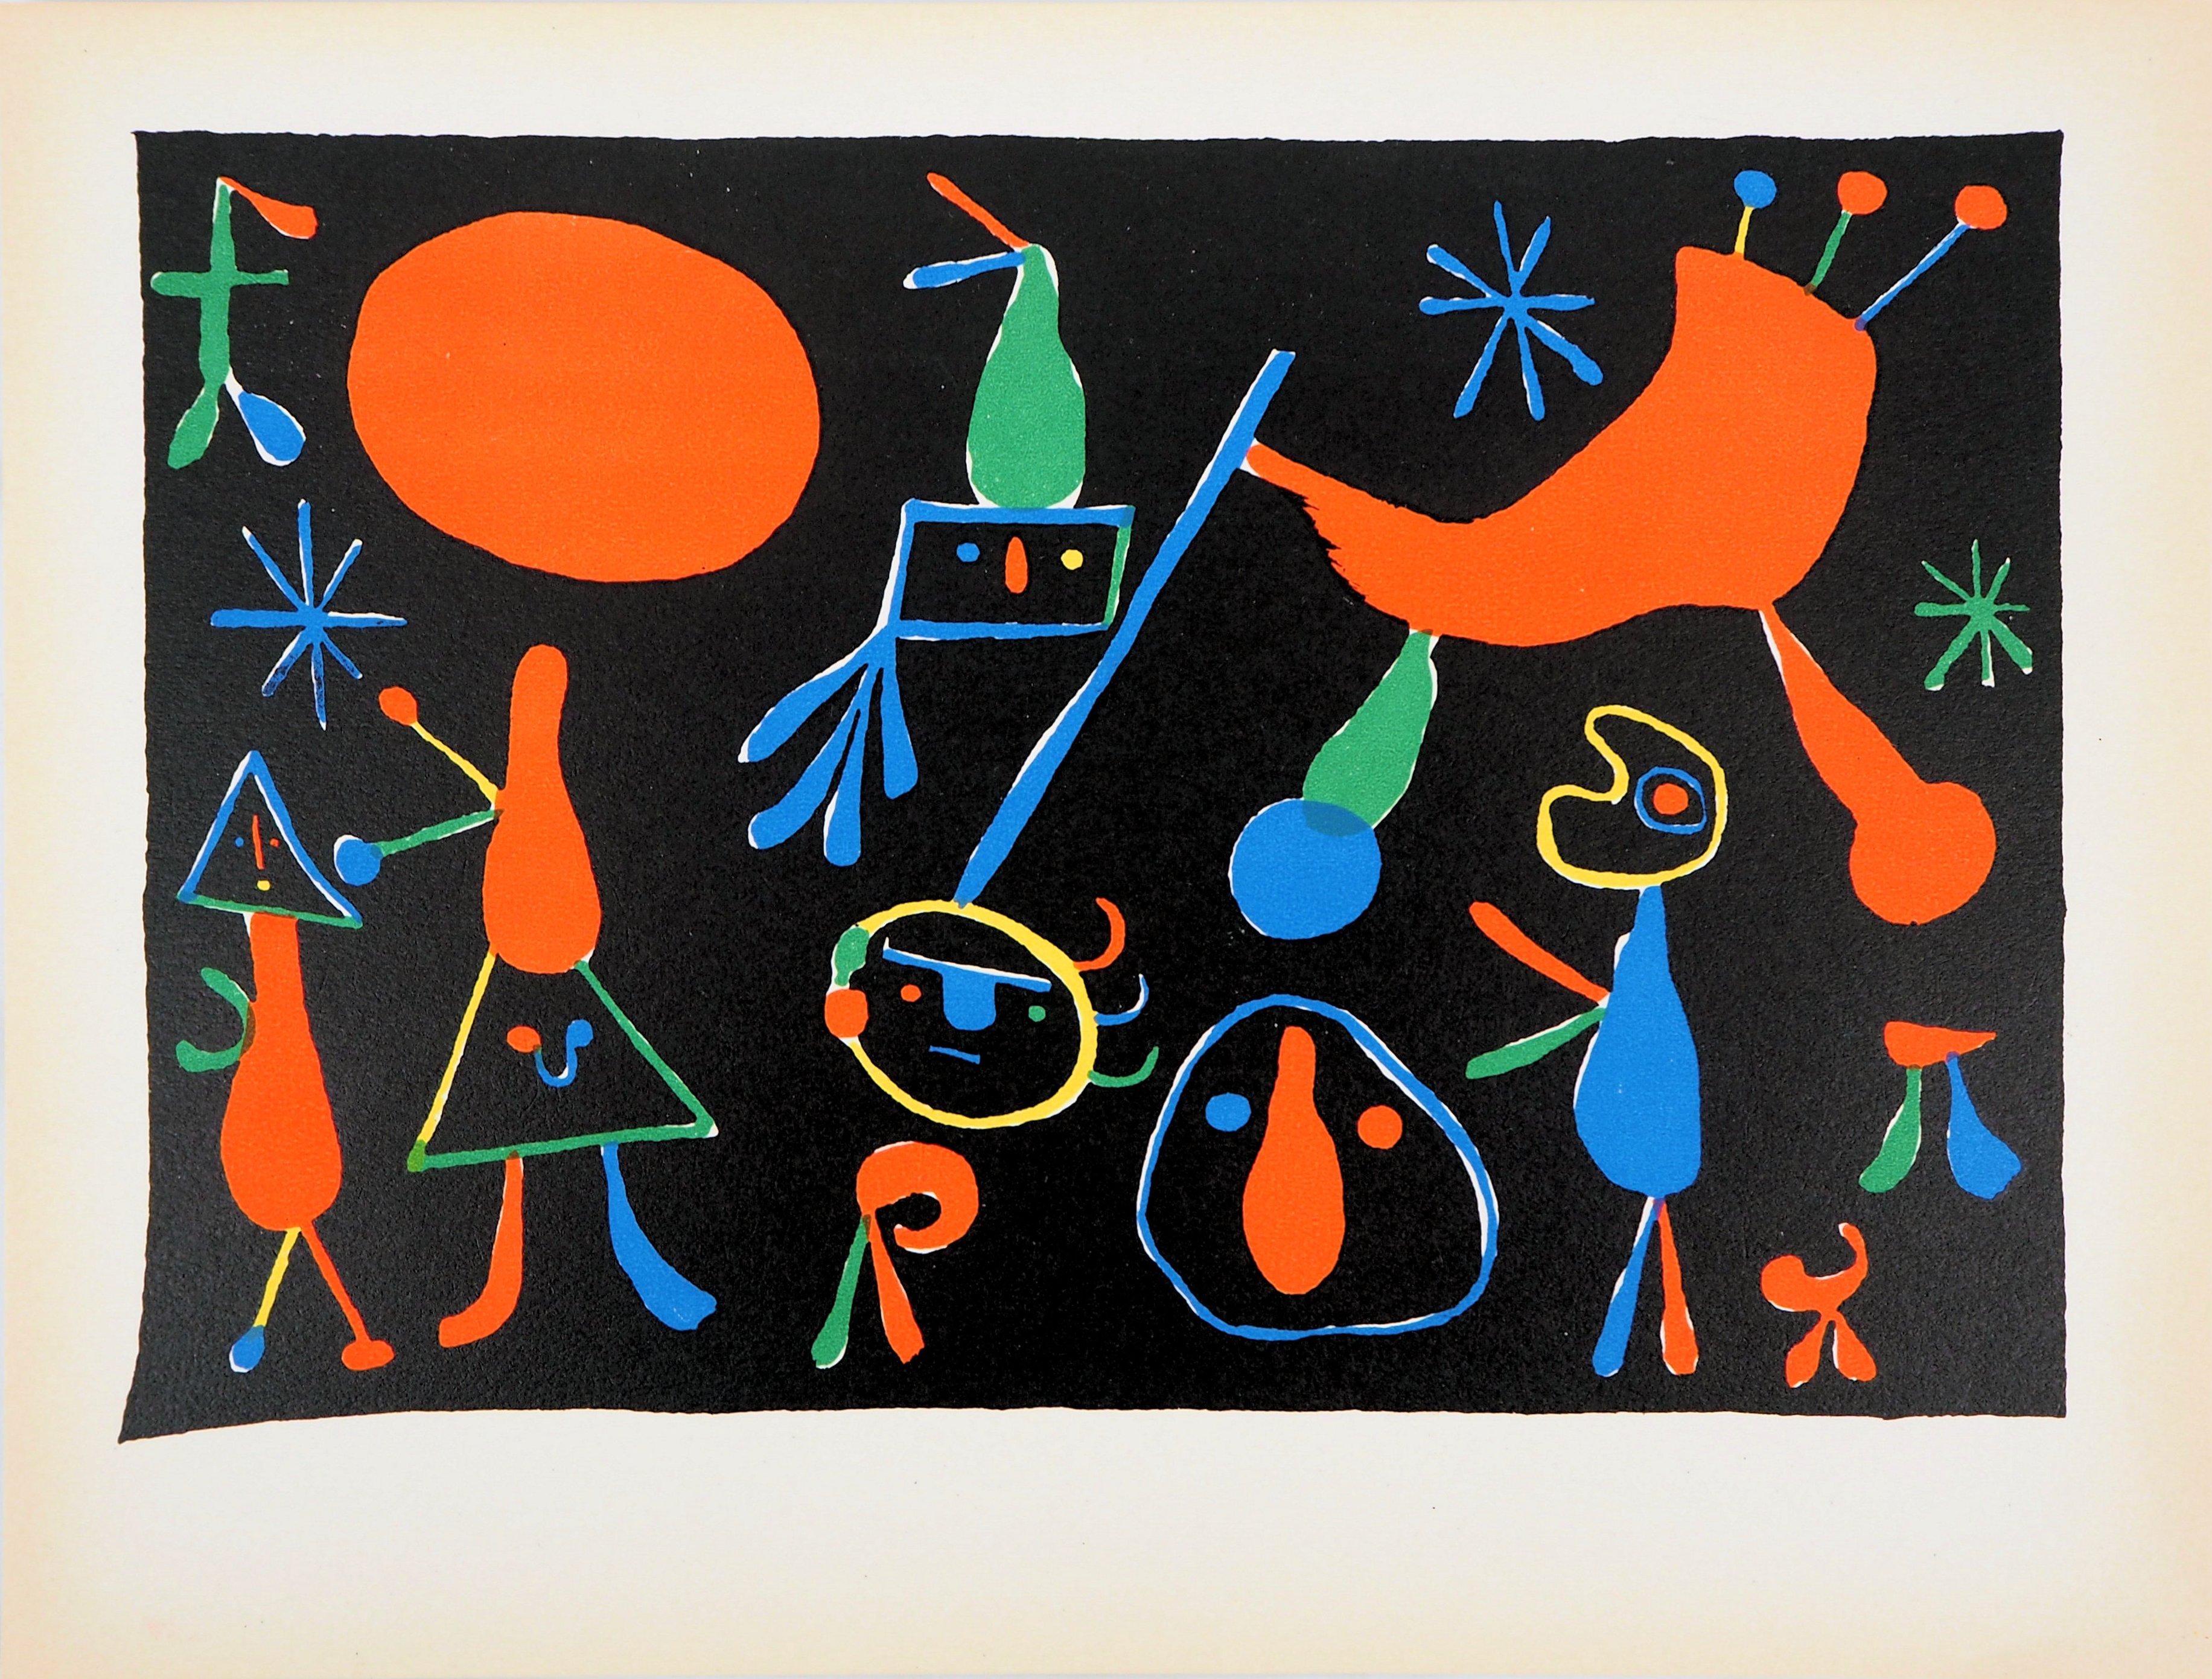 Joan MIRO (nach)
Sternbilder : Menschen mit Sternen

Lithographie
Vorzeichenlos
Herausgegeben von Cahiers d'art im Jahr 1949
Auf Vellum 24,5 x 32 cm (ca. 10 x 13 inch)

Ausgezeichneter Zustand